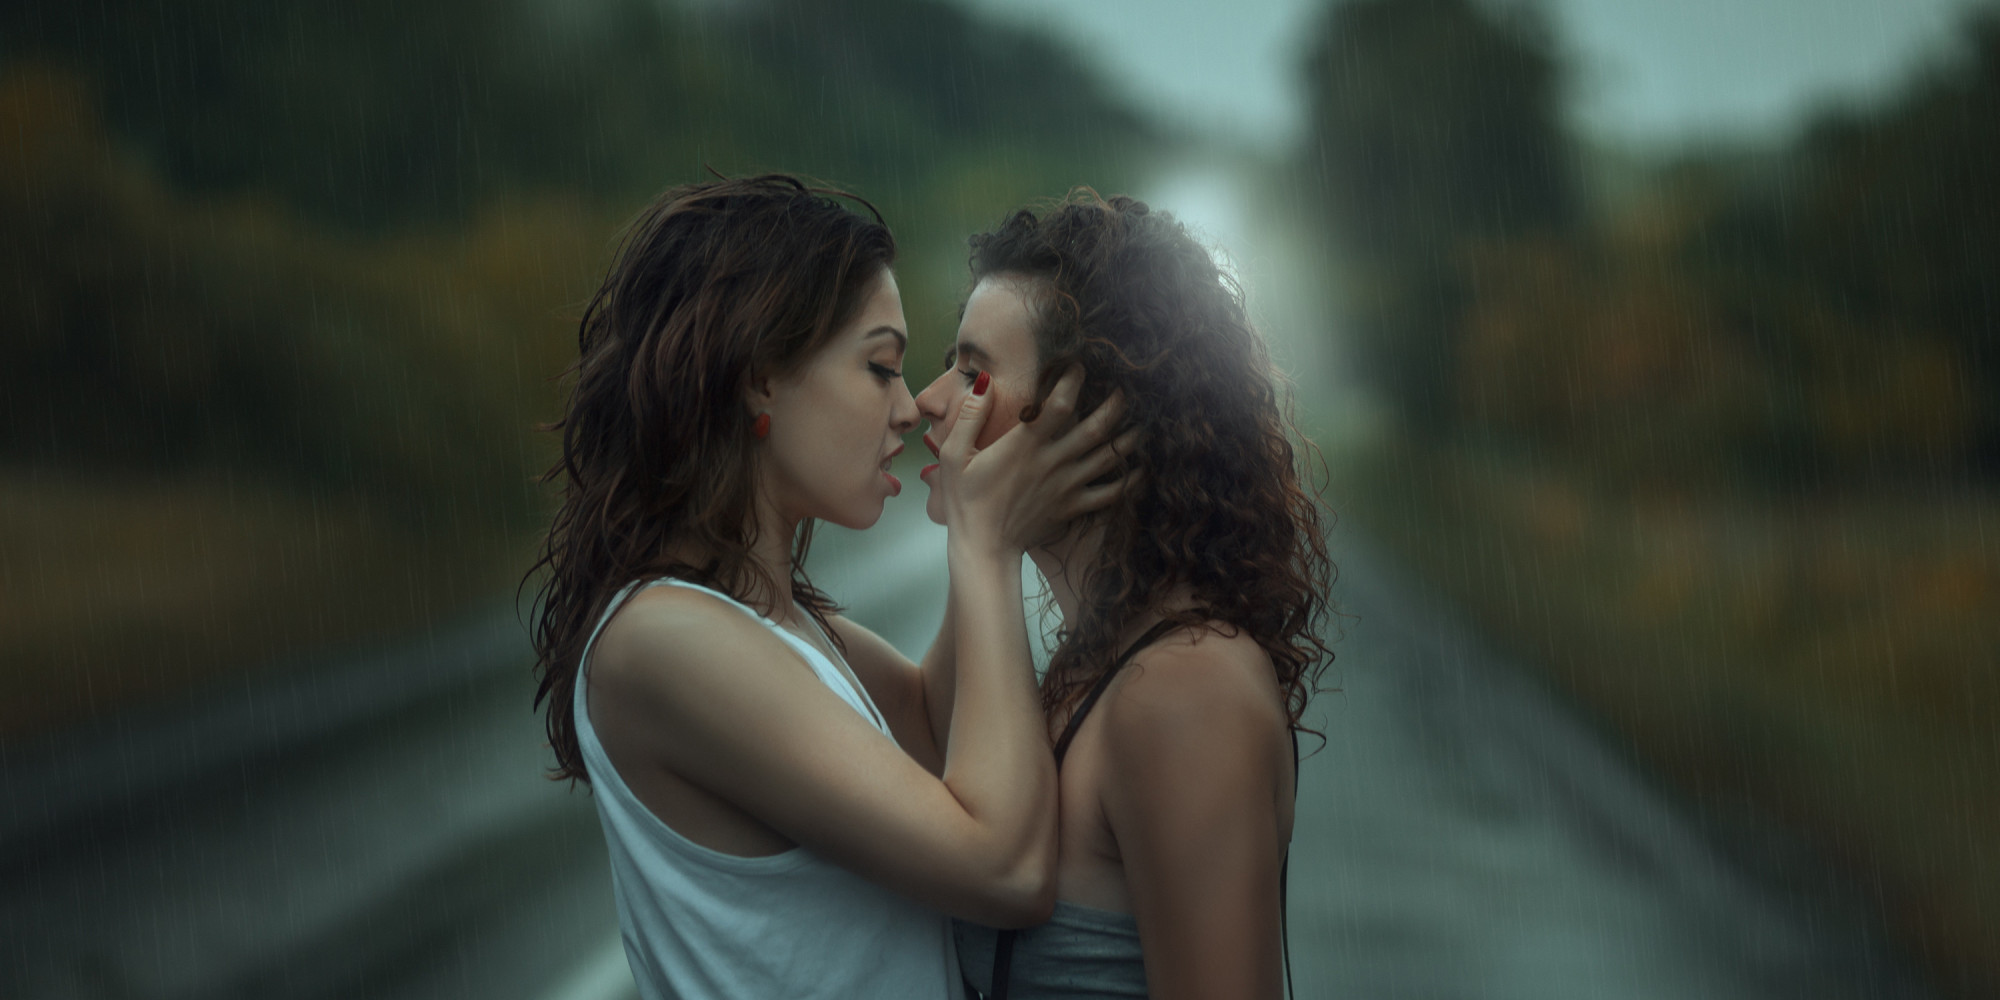 Lesbian 11. Девушки обнимаются. Поцелуй девушек. Девушки целуются фото.